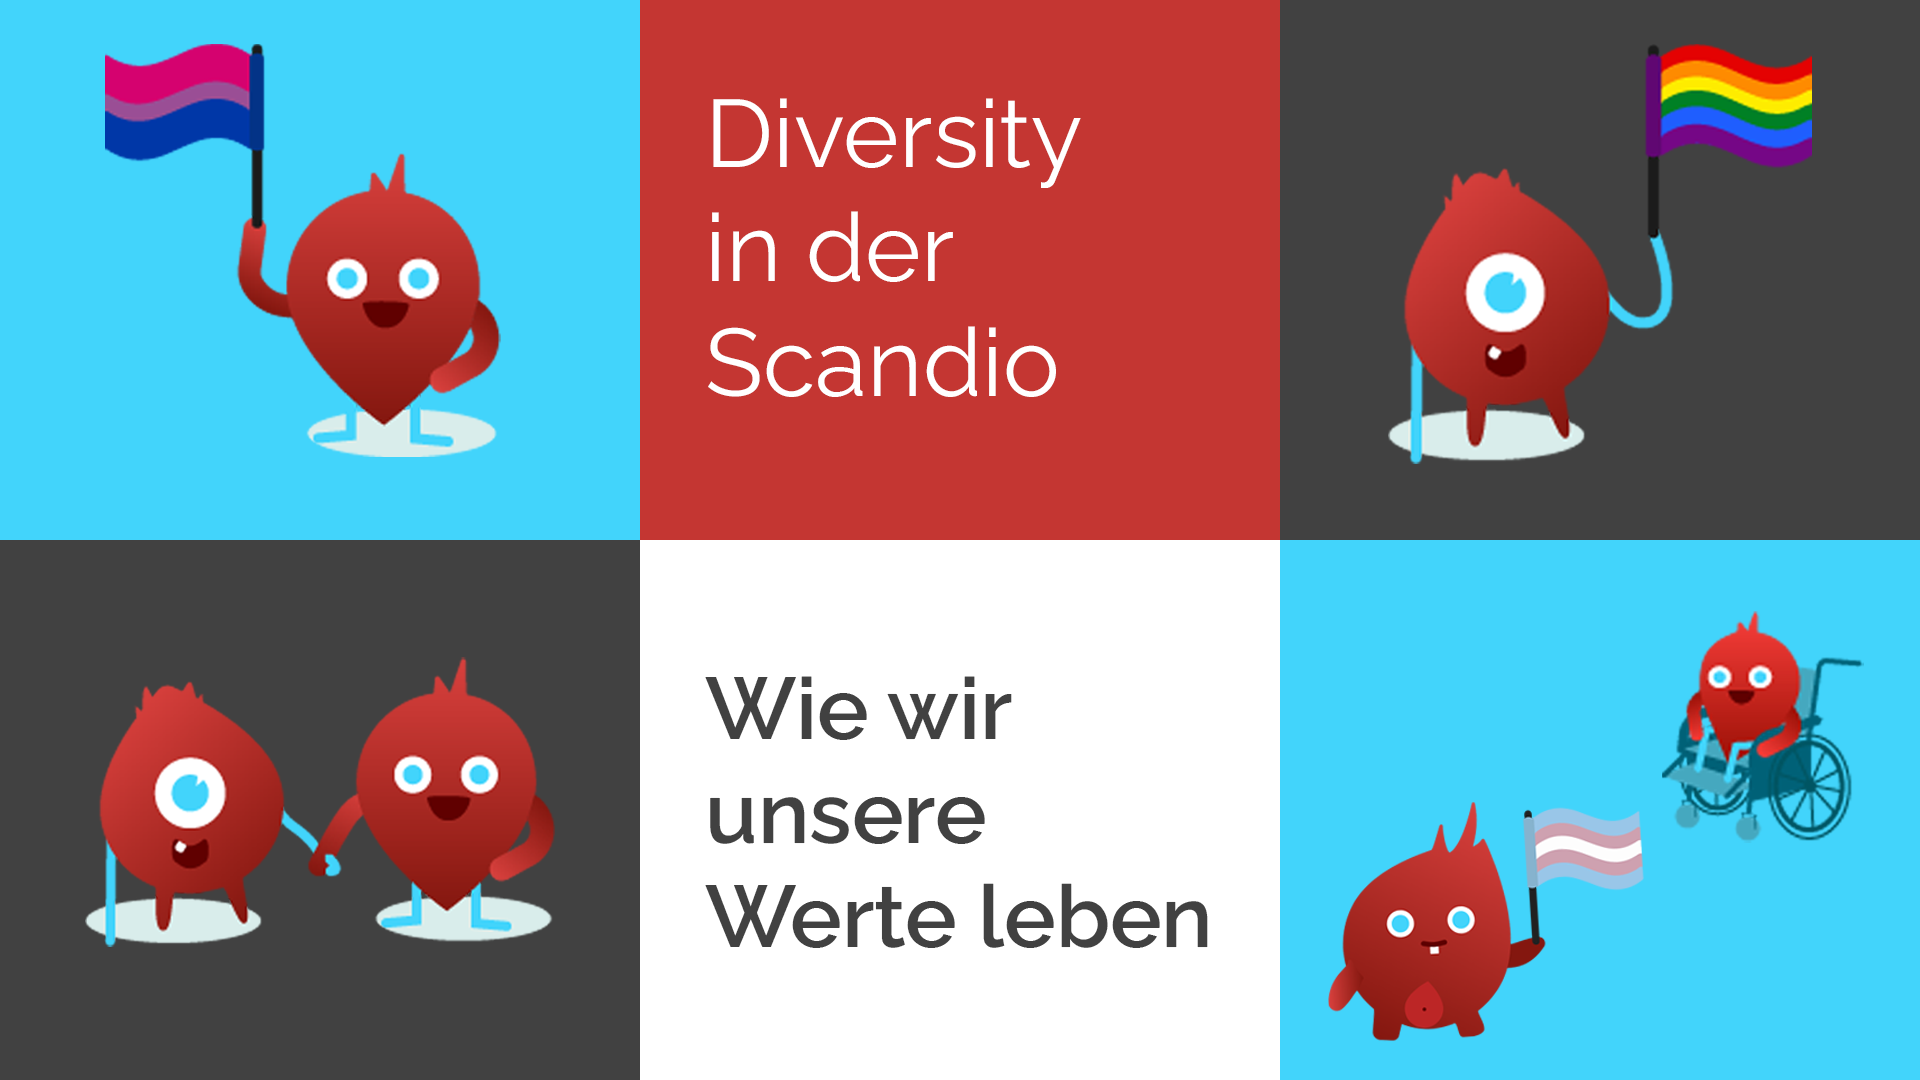 Diversity in der Scandio - Wie wir unsere Werte leben